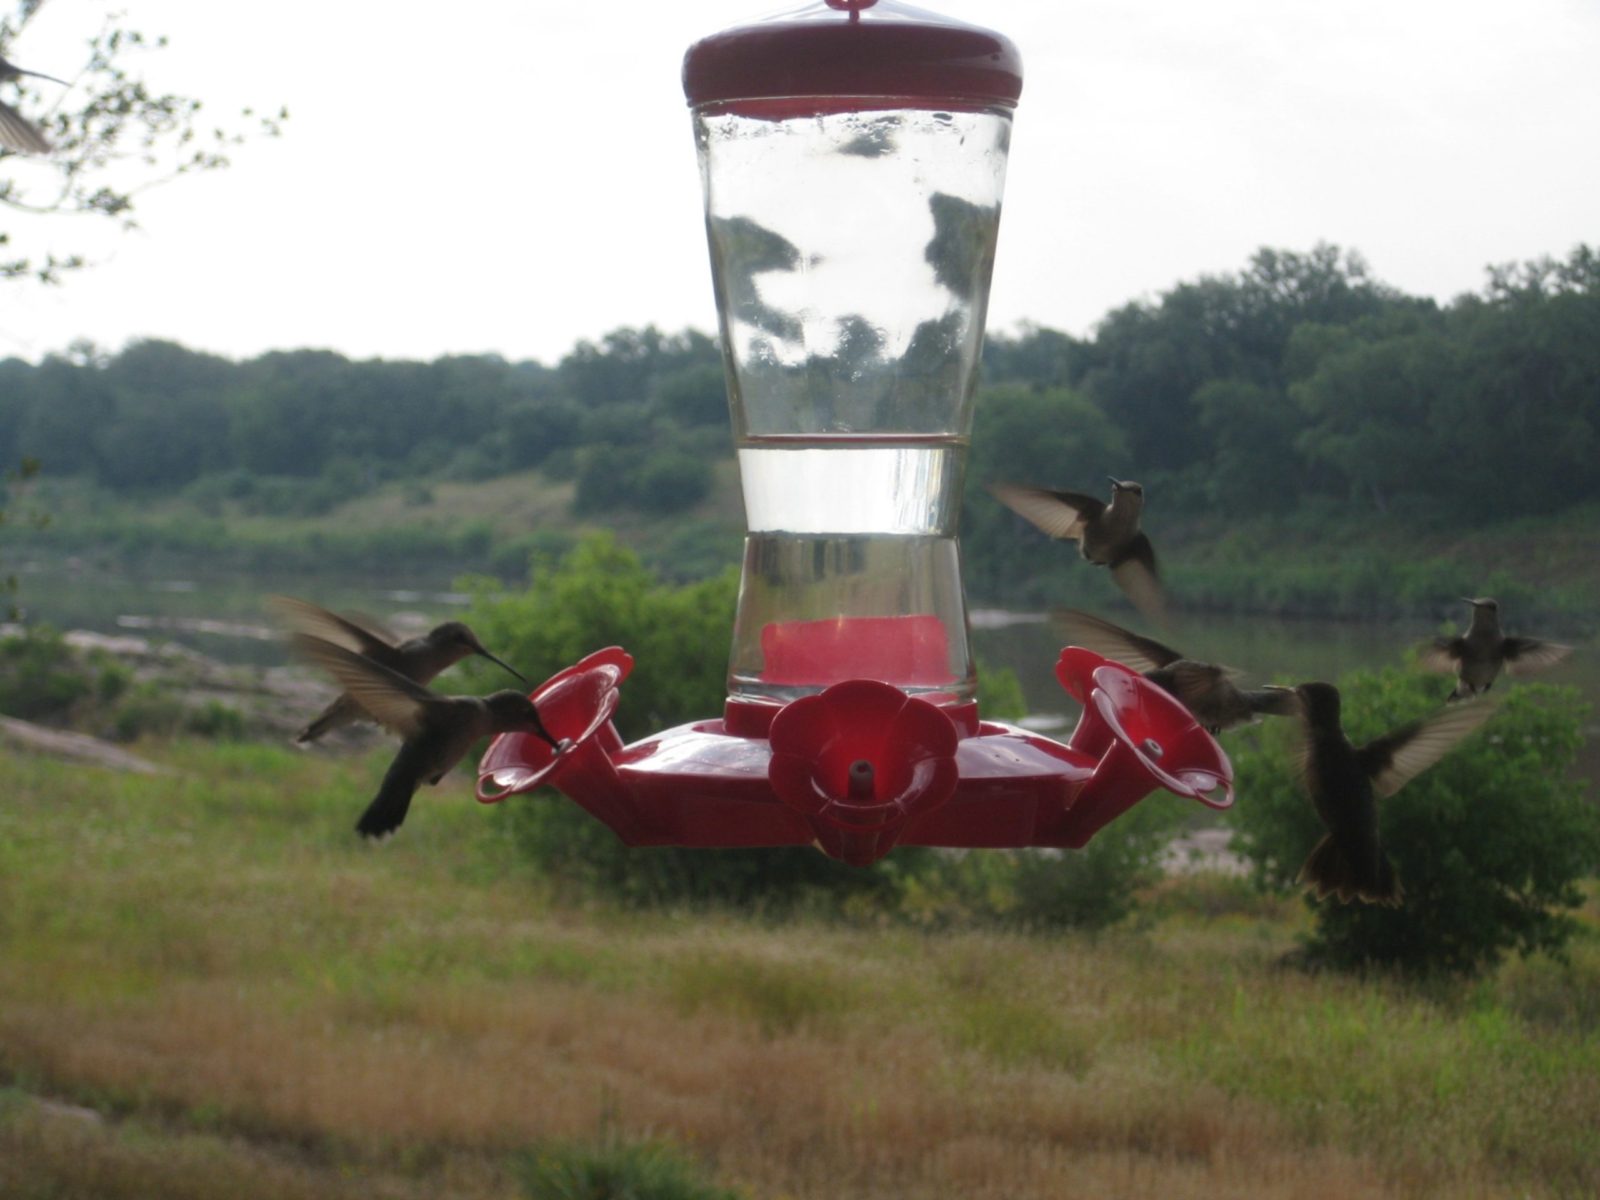 hummingbirds at a feeder